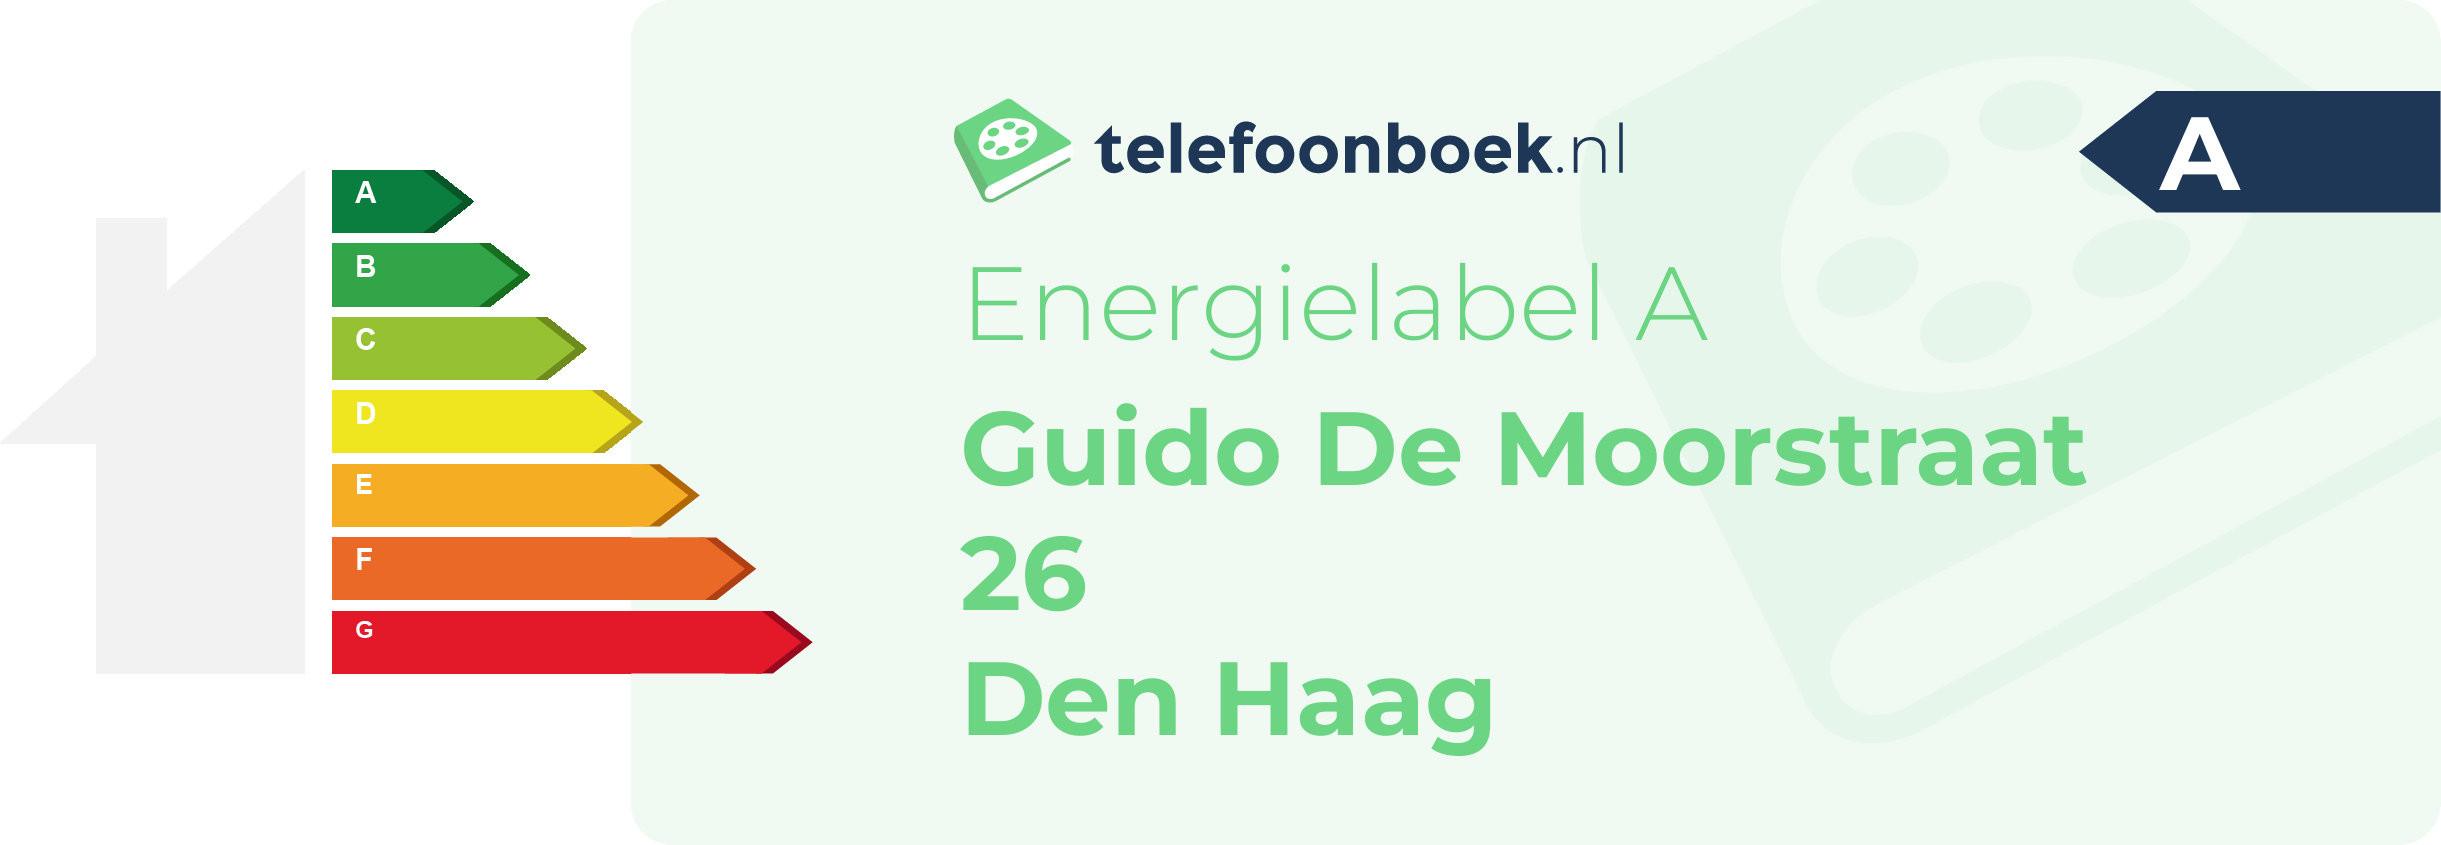 Energielabel Guido De Moorstraat 26 Den Haag